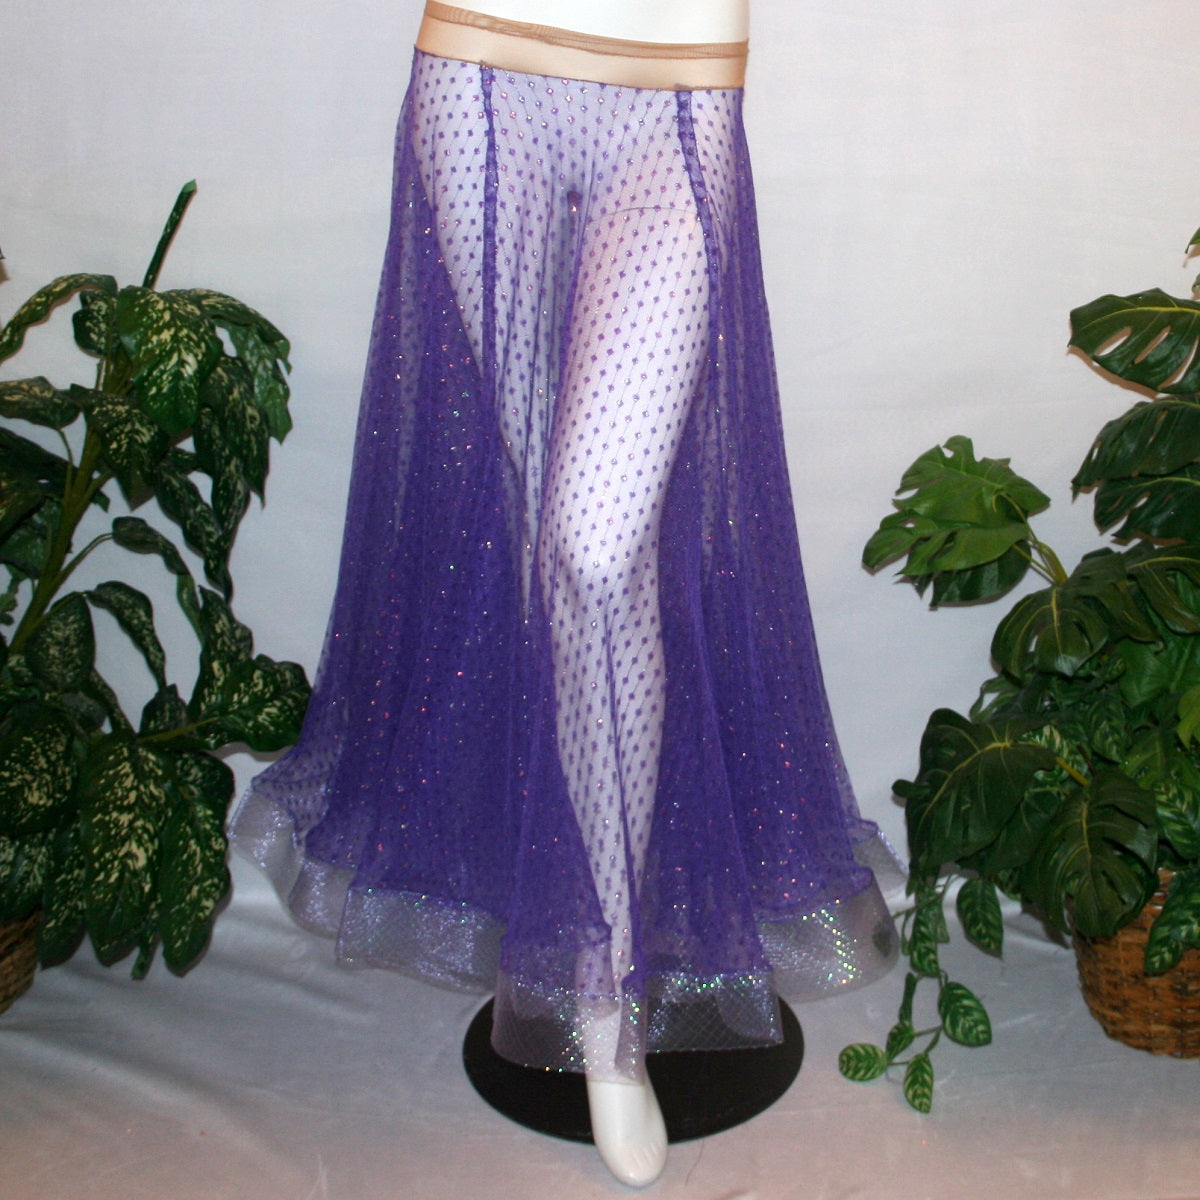 Purple ballroom skirt created of yards of textured purple iridescent glitter sheer fabric with 4" iridescent horsehair hem. 